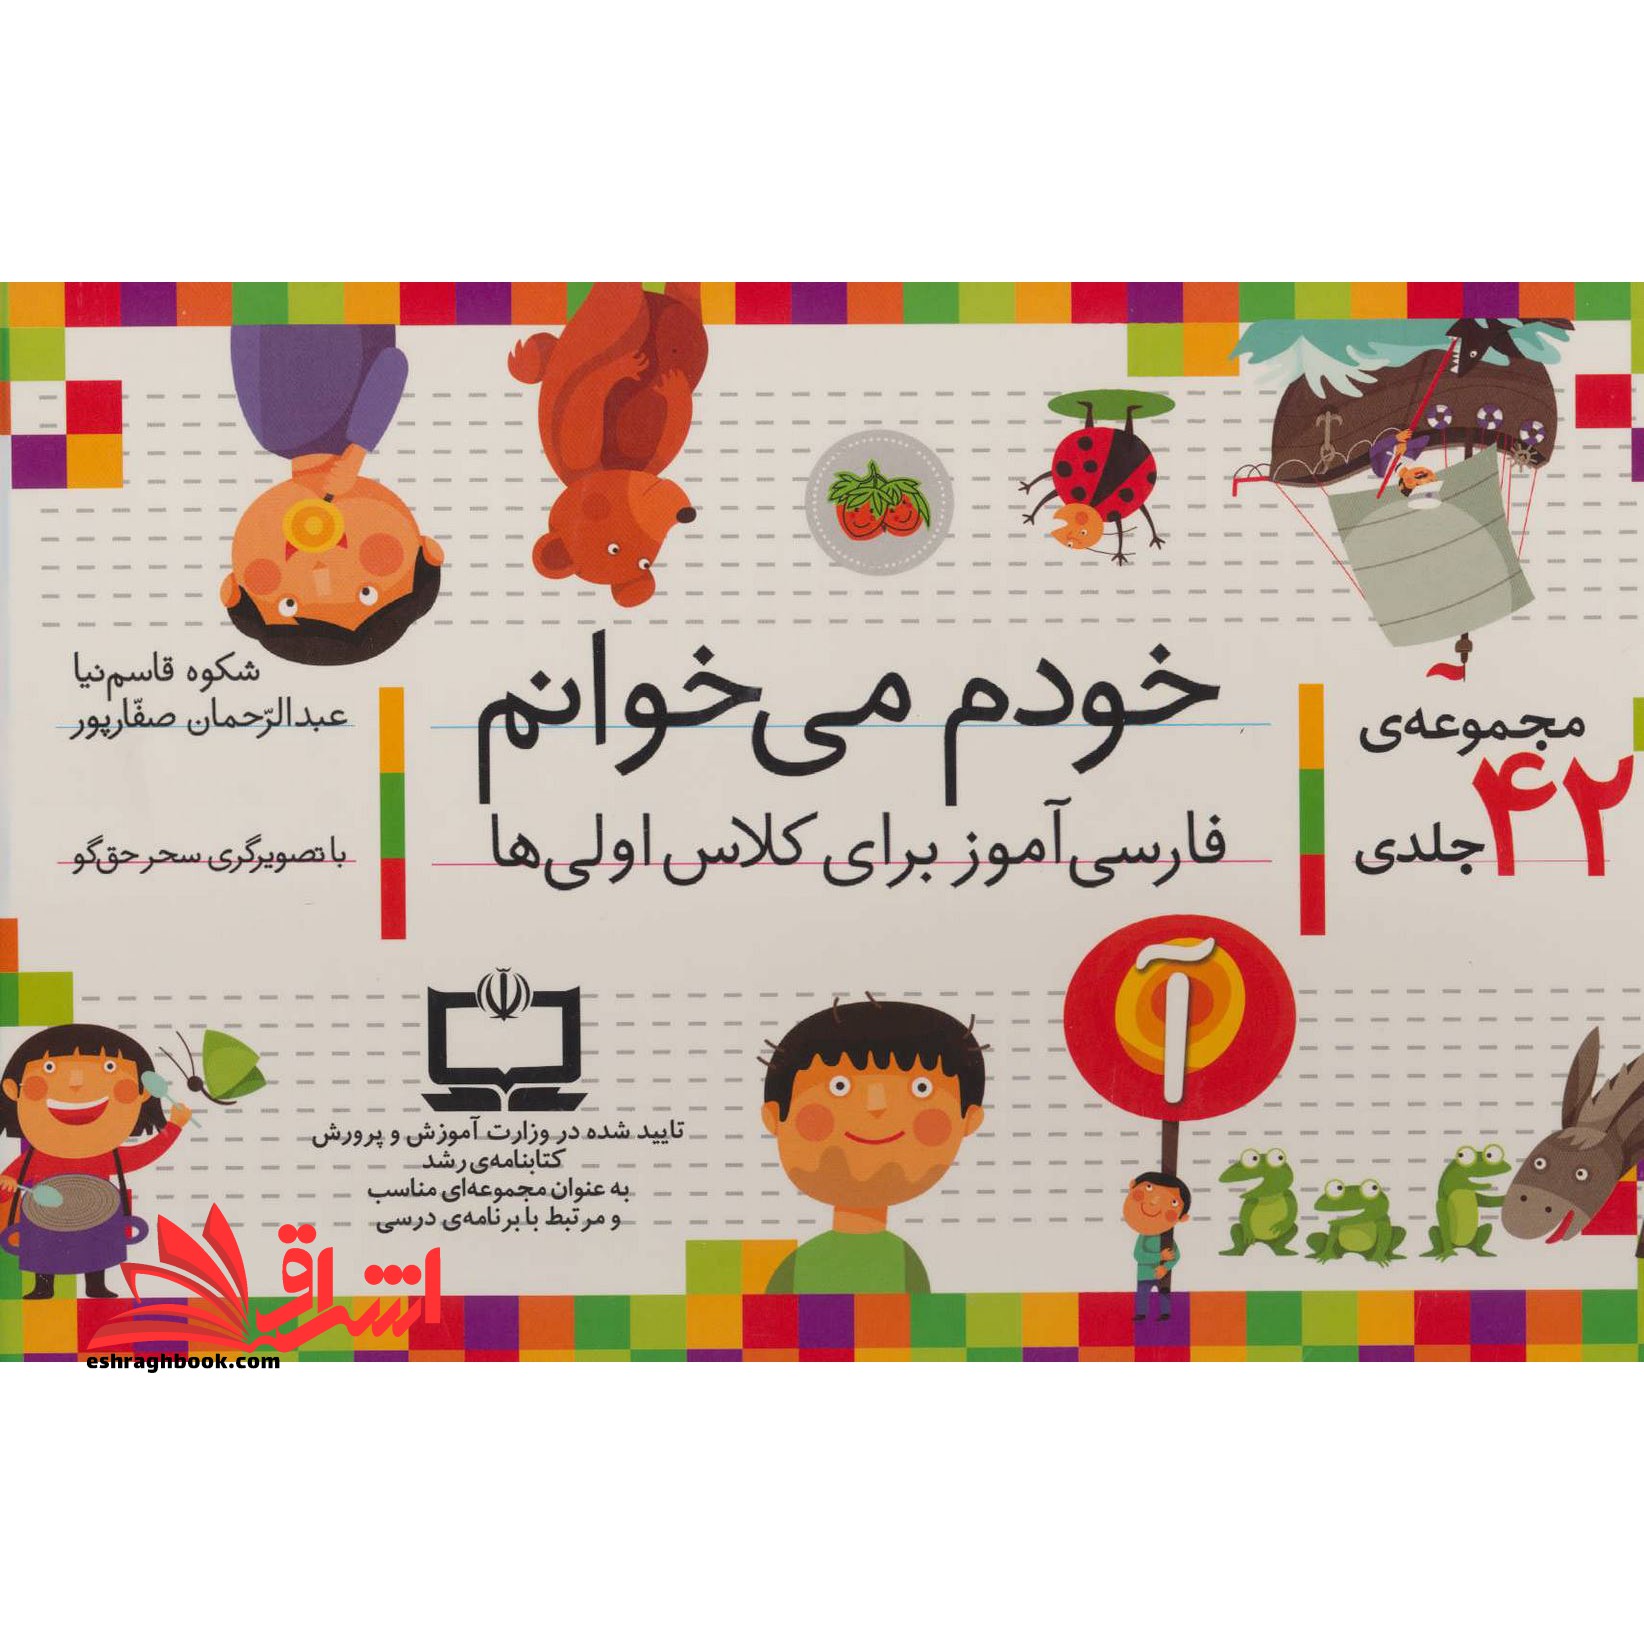 مجموعه 42 جلدی خودم میخوانم فارسی آموز برای کلاس اولی ها